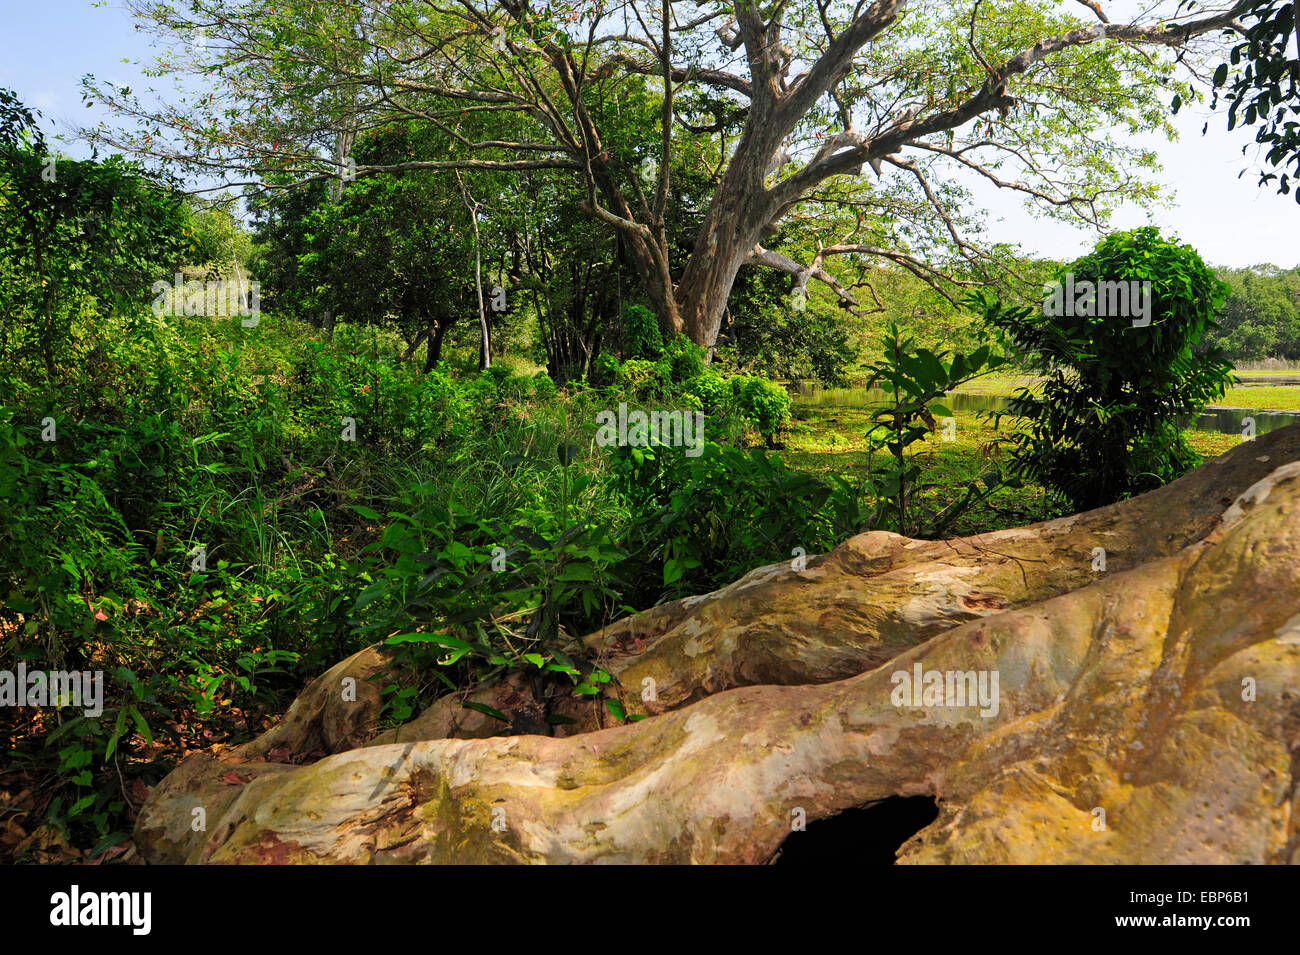 Baum-Wurzel, Sri Lanka, Wilpattu Nationalpark Stockfoto